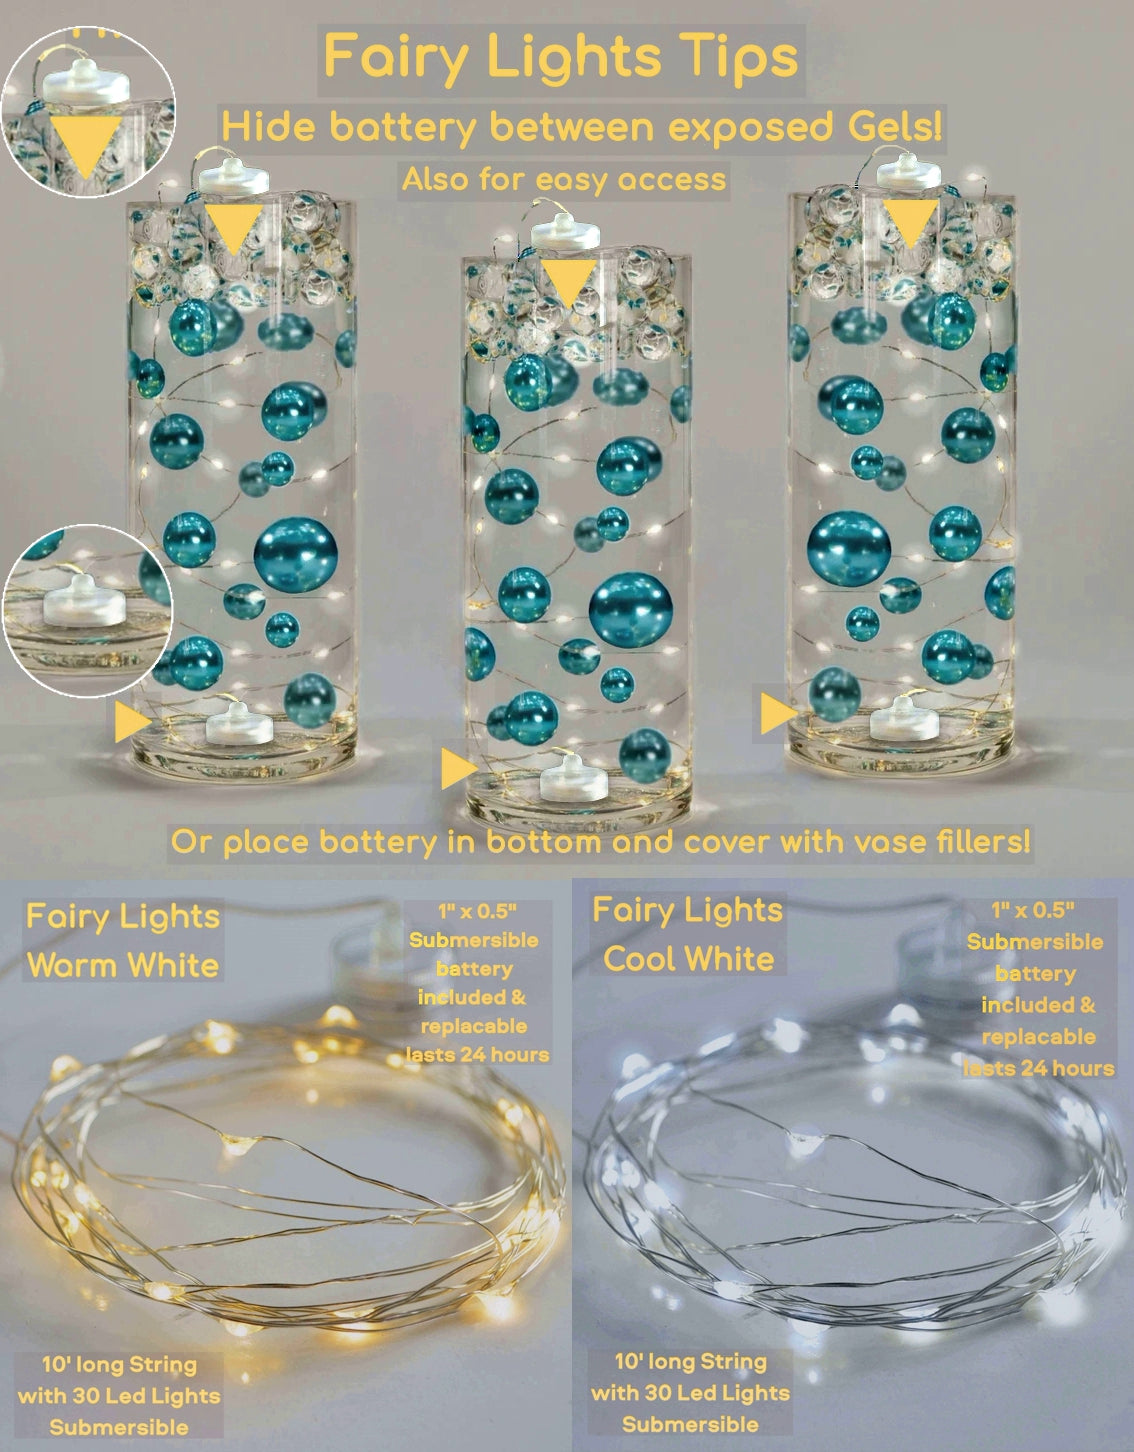 1 GL de perles blanches scintillantes flottantes - Y compris les gels d'eau et le kit pour l'effet flottant - Option de guirlandes lumineuses submersibles - Décorations de pièce maîtresse